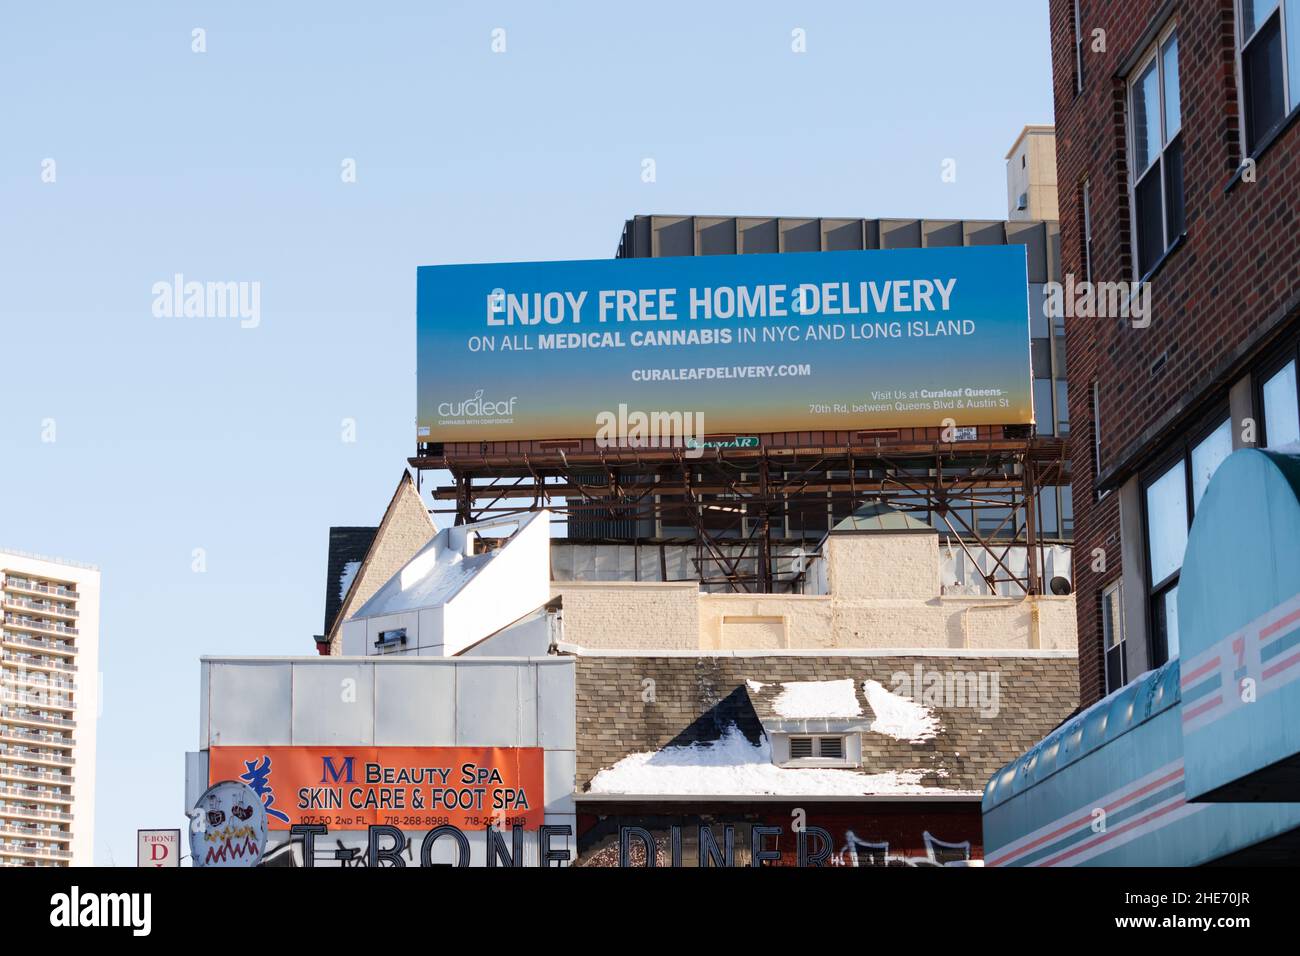 Una cartelera que anunciaba la entrega gratuita a domicilio de cannabis medicinal o marihuana en la ciudad de Nueva York y Long Island por Curaleaf contra un cielo azul claro Foto de stock